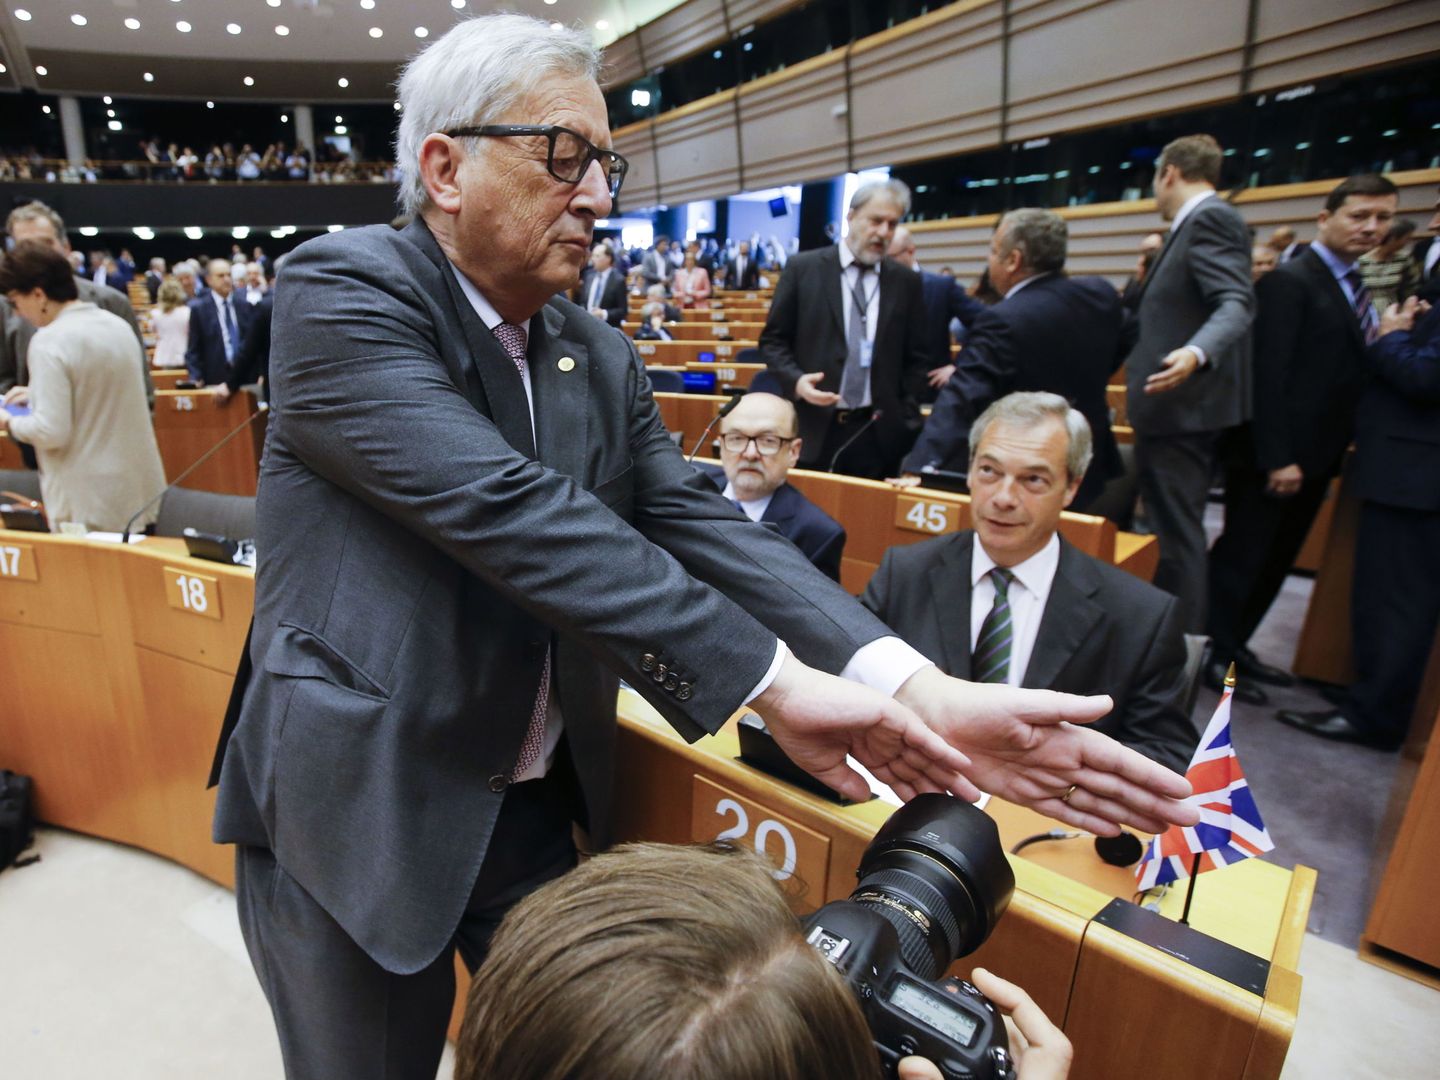 Jean-Claude Juncker y Nigel Farage en el Parlamento Europeo en una imagen de archivo. (Reuters)